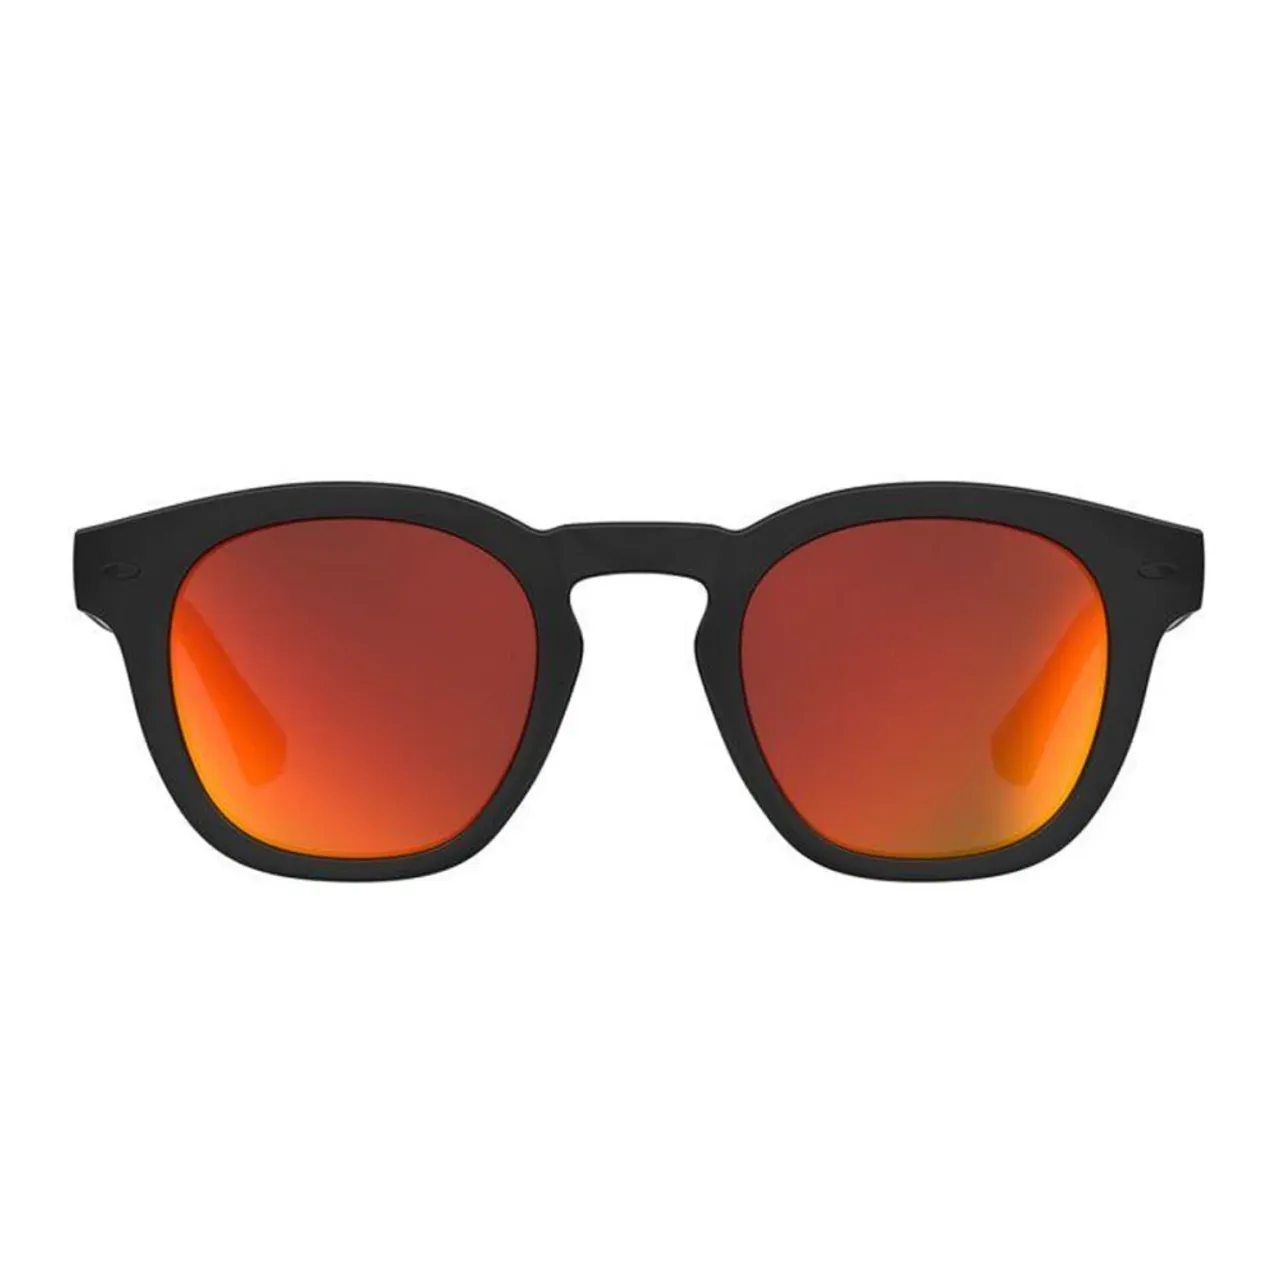 Sonnenbrille mit Kissen-Design Havaianas